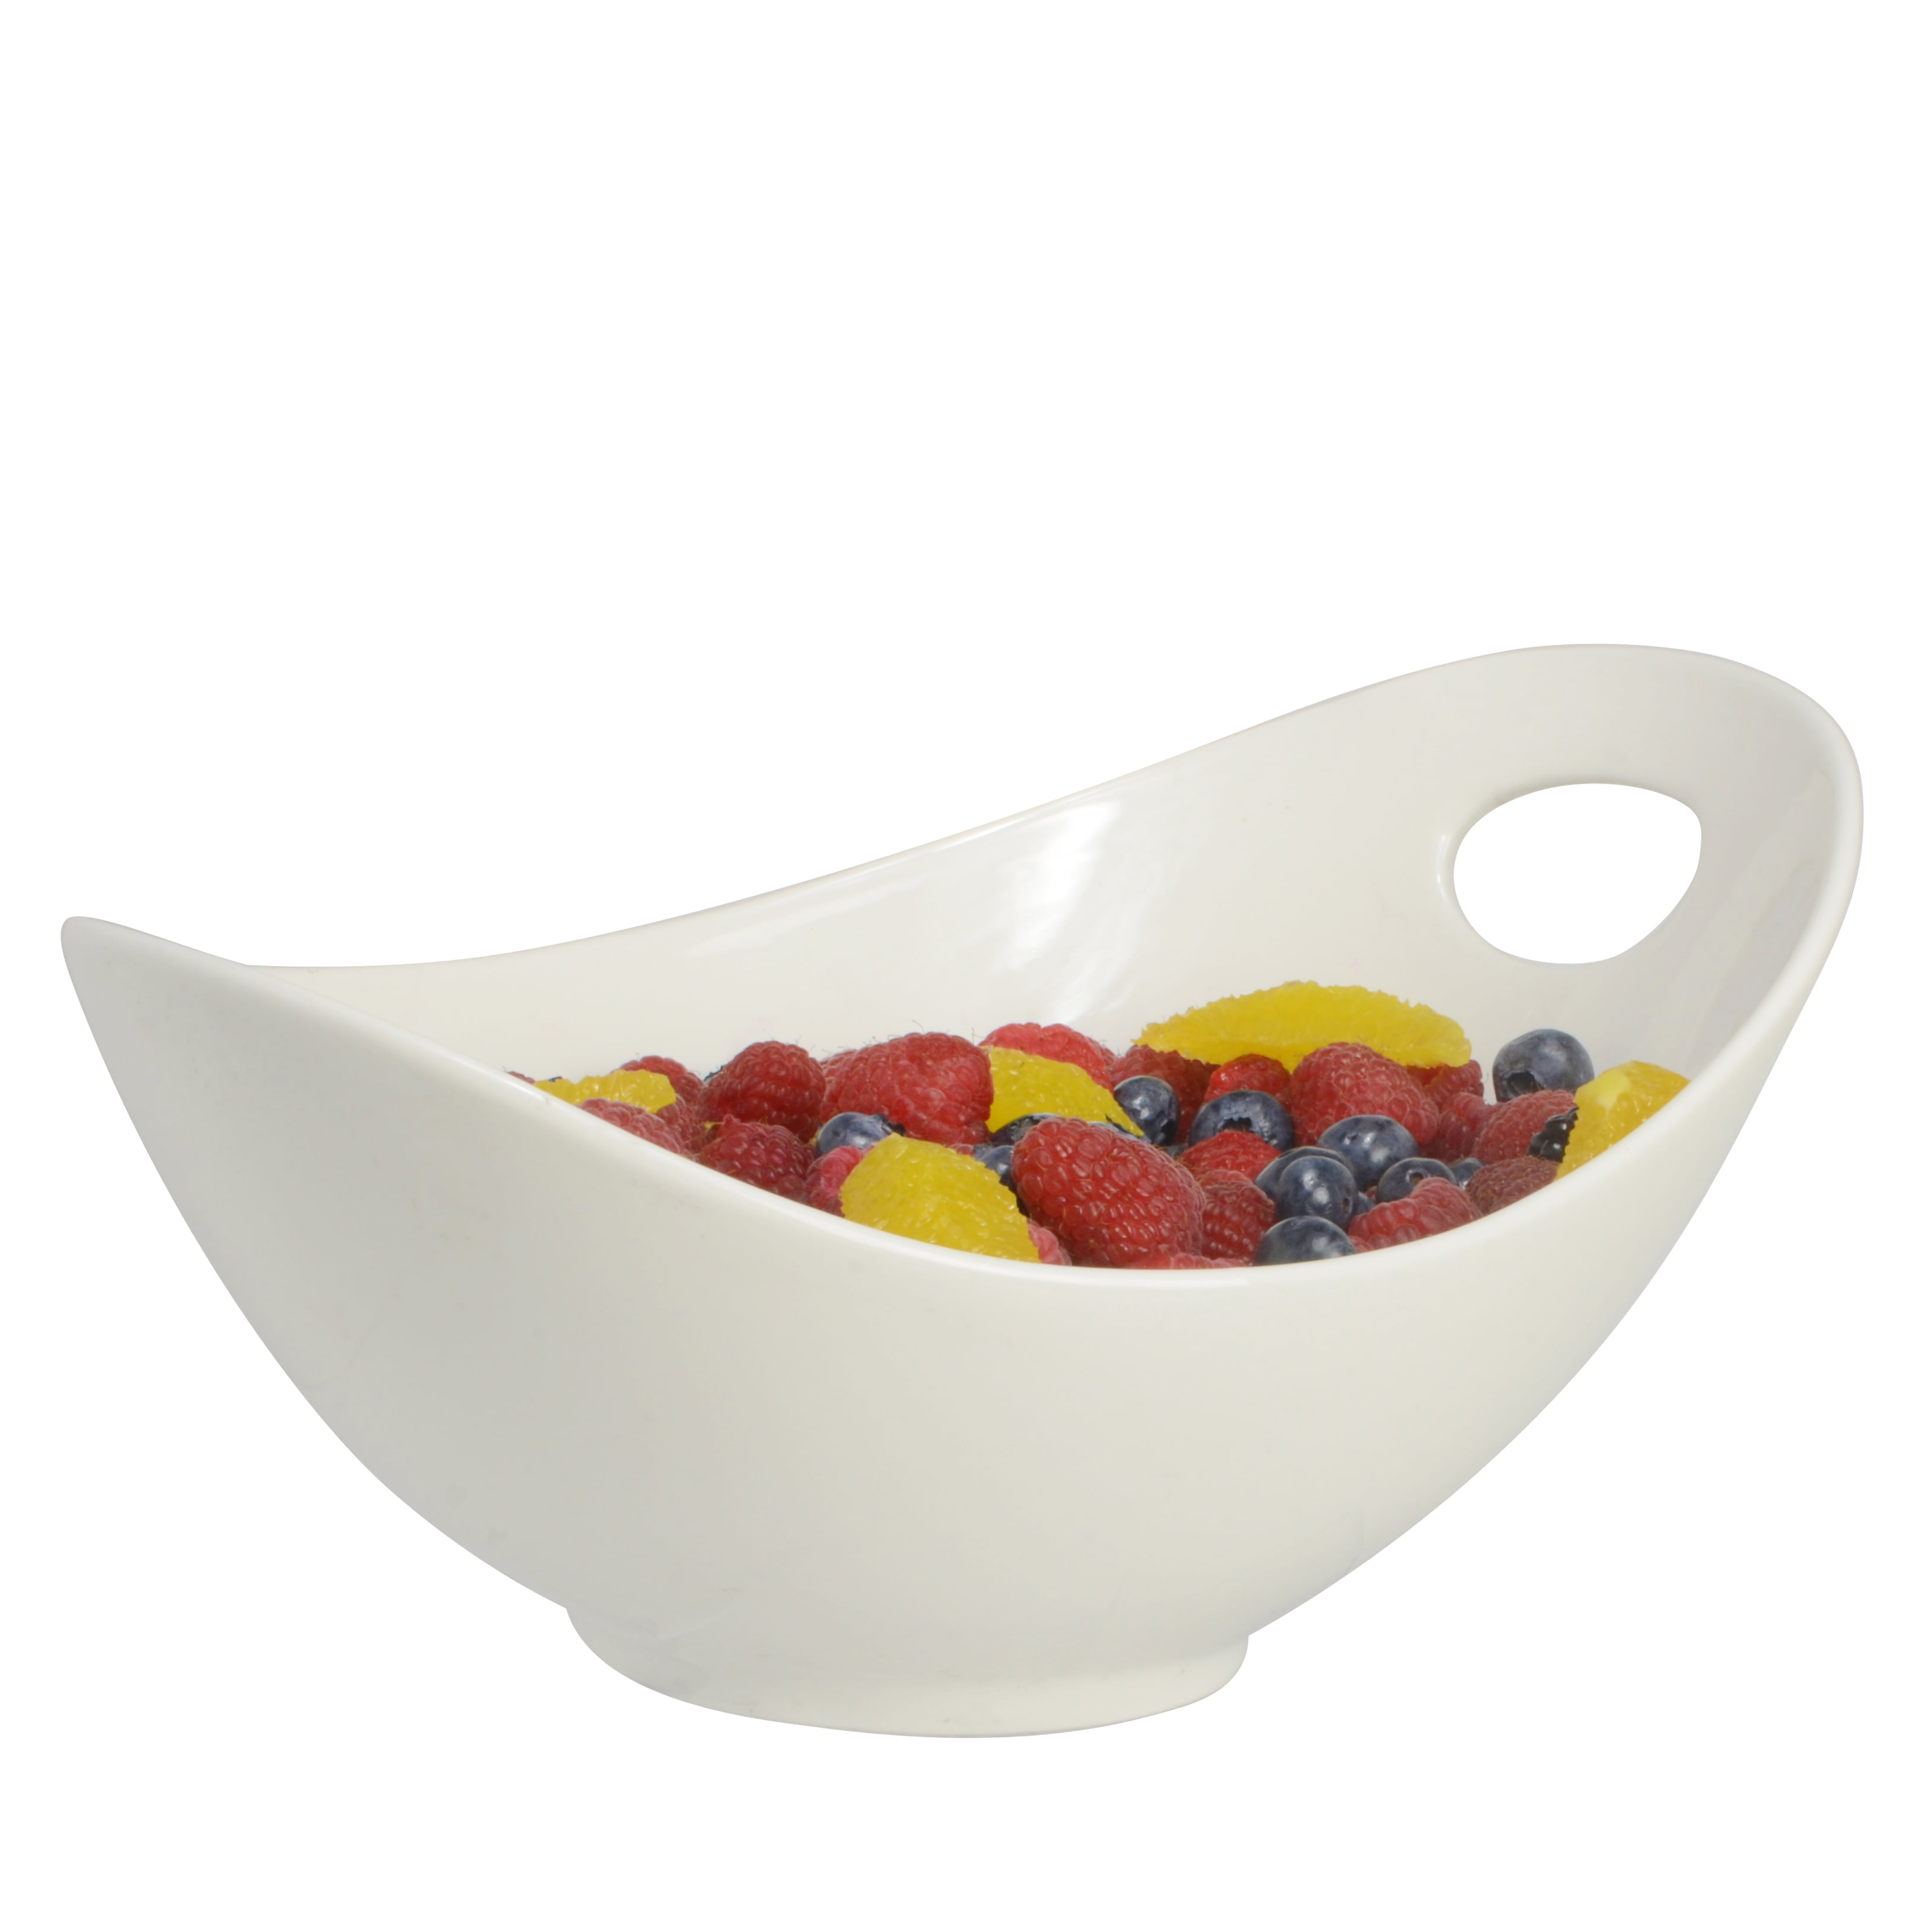 Large Round Pedestal Fruit Bowl, White Wash – High Street Market